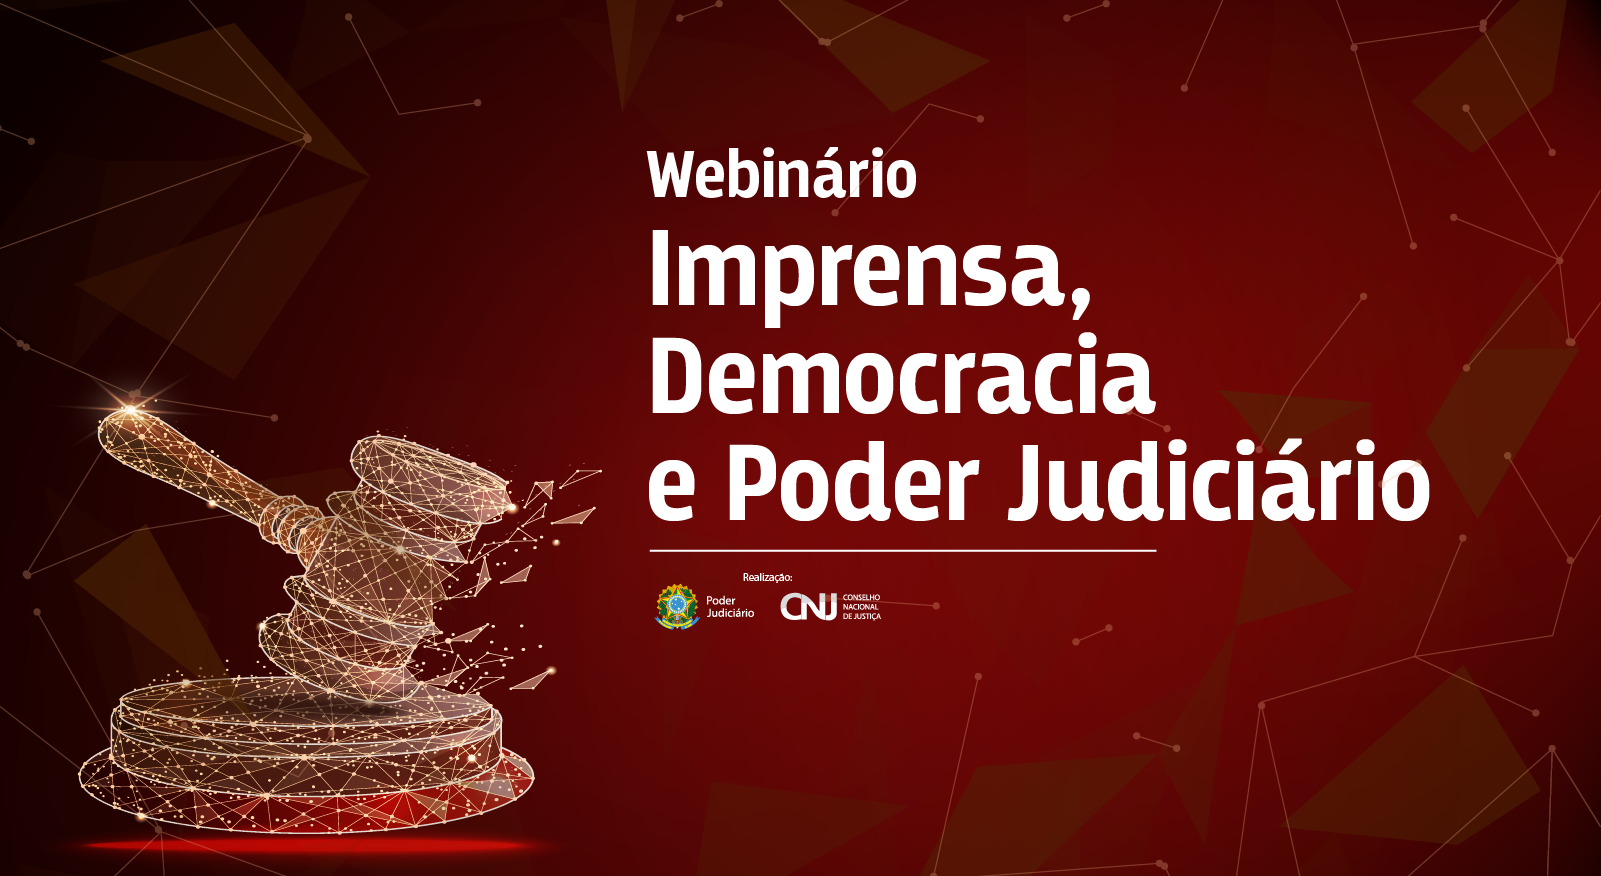 INSTITUCIONAL: Acompanhe a transmissão do webinário “Imprensa, democracia e Poder Judiciário”